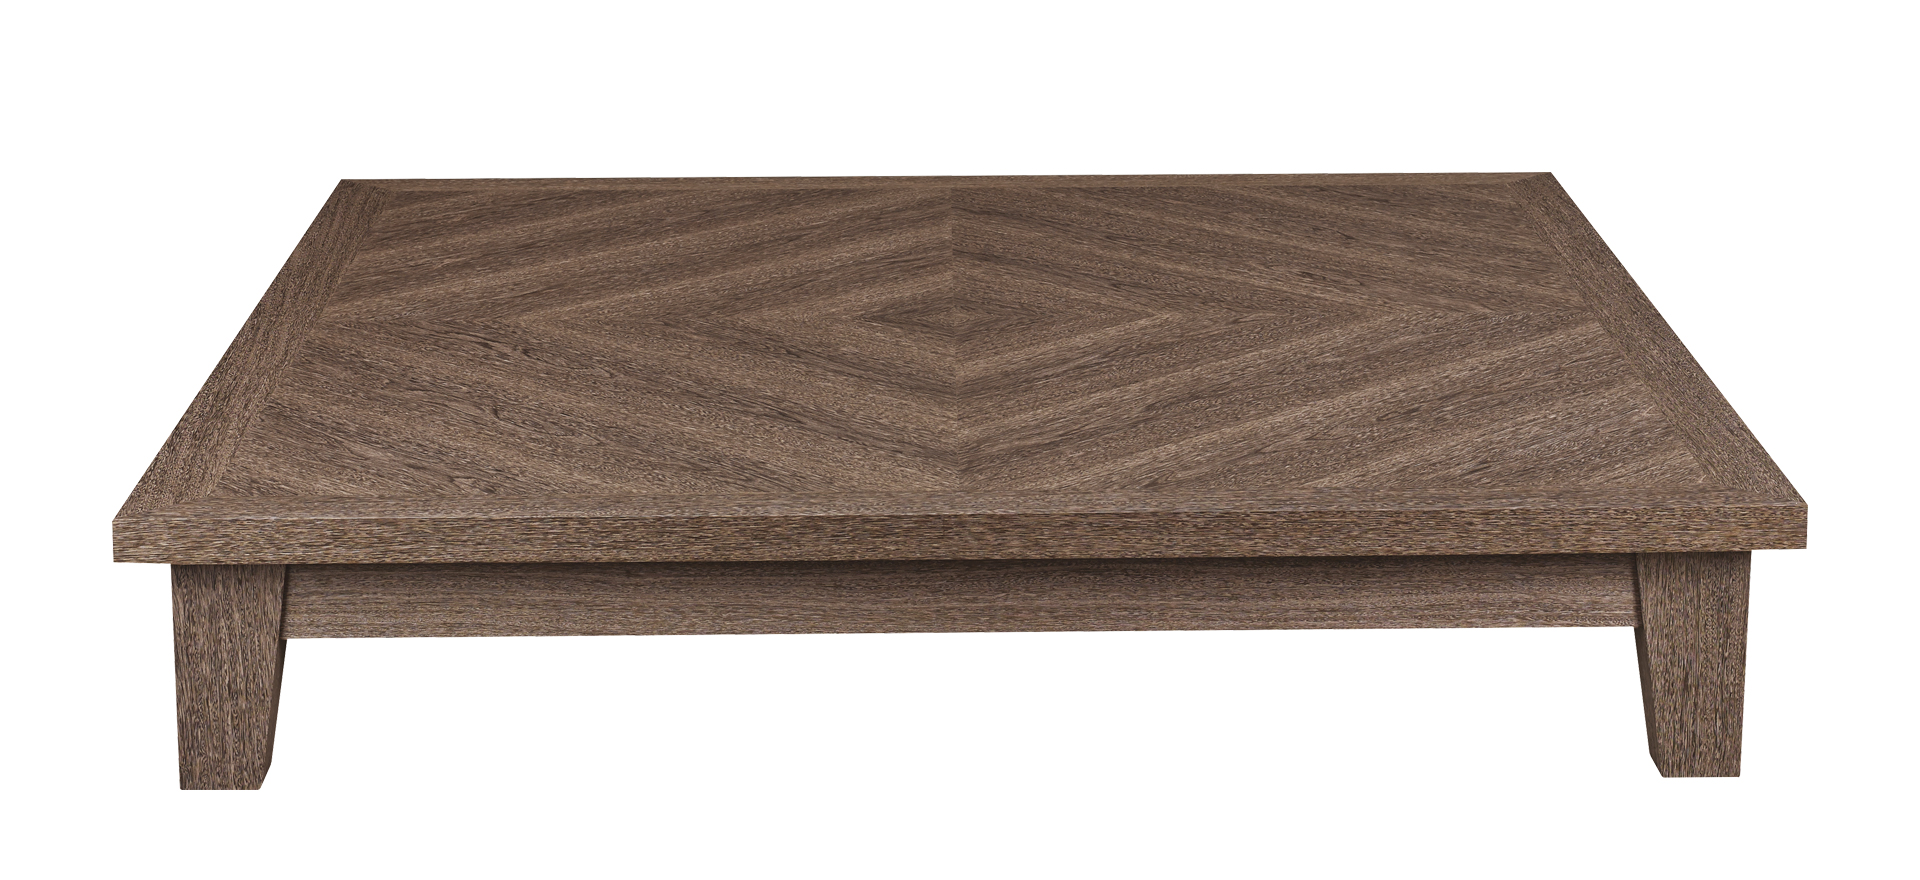 Eduardo — деревянный кофейный столик квадратной или прямоугольной формы из каталога Promemoria | Promemoria